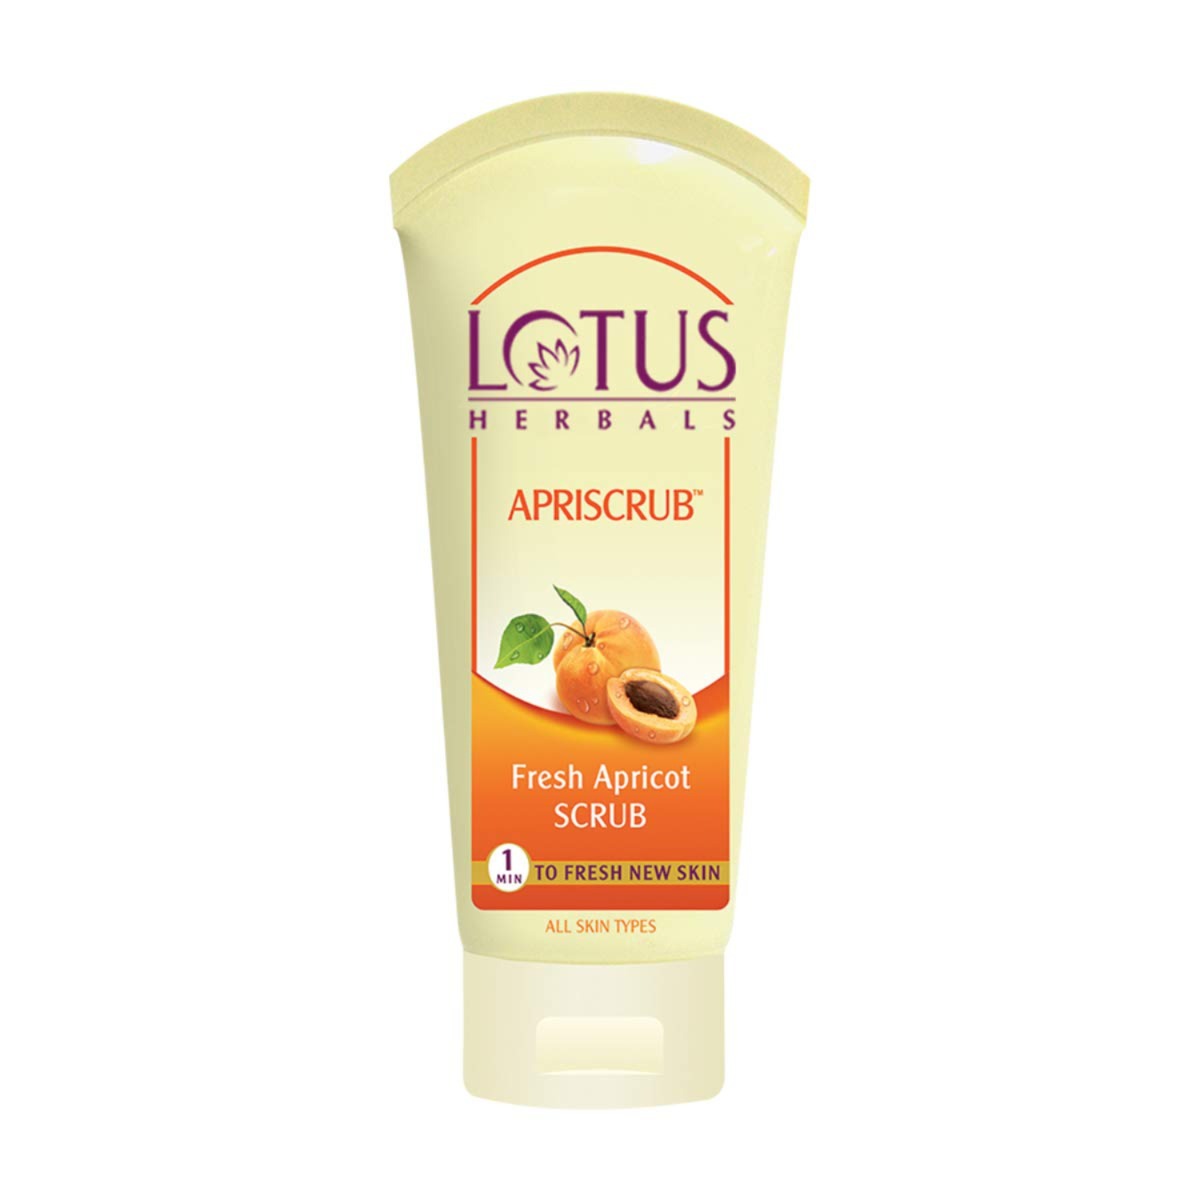 Lotus Herbals Apriscrub Fresh Apricot Scrub, 60g